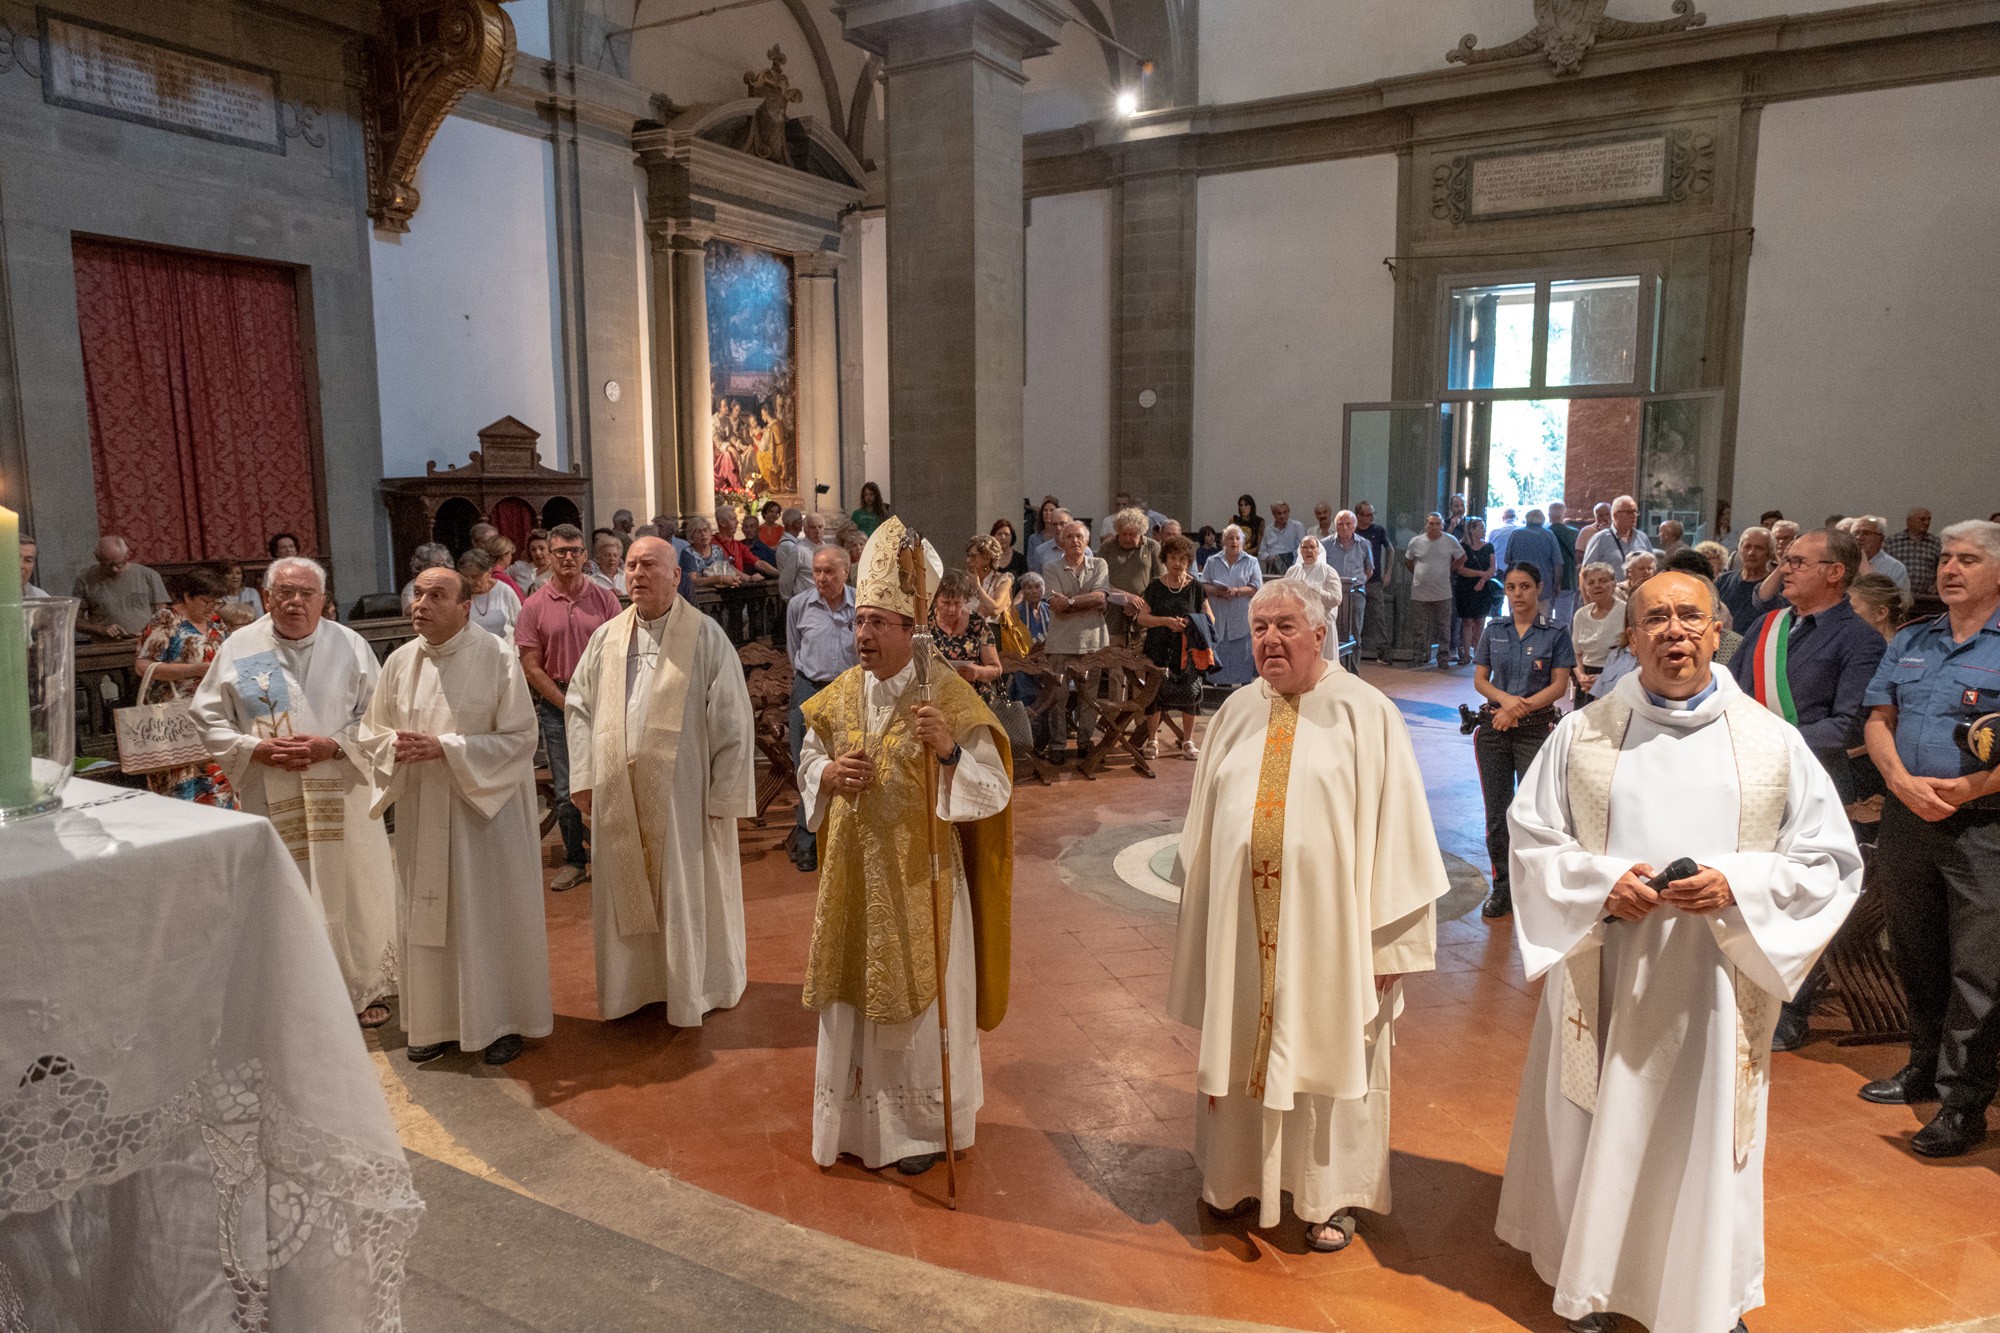 La bella festa  parrocchiale dell'otto settembre a Santa Maria Nuova